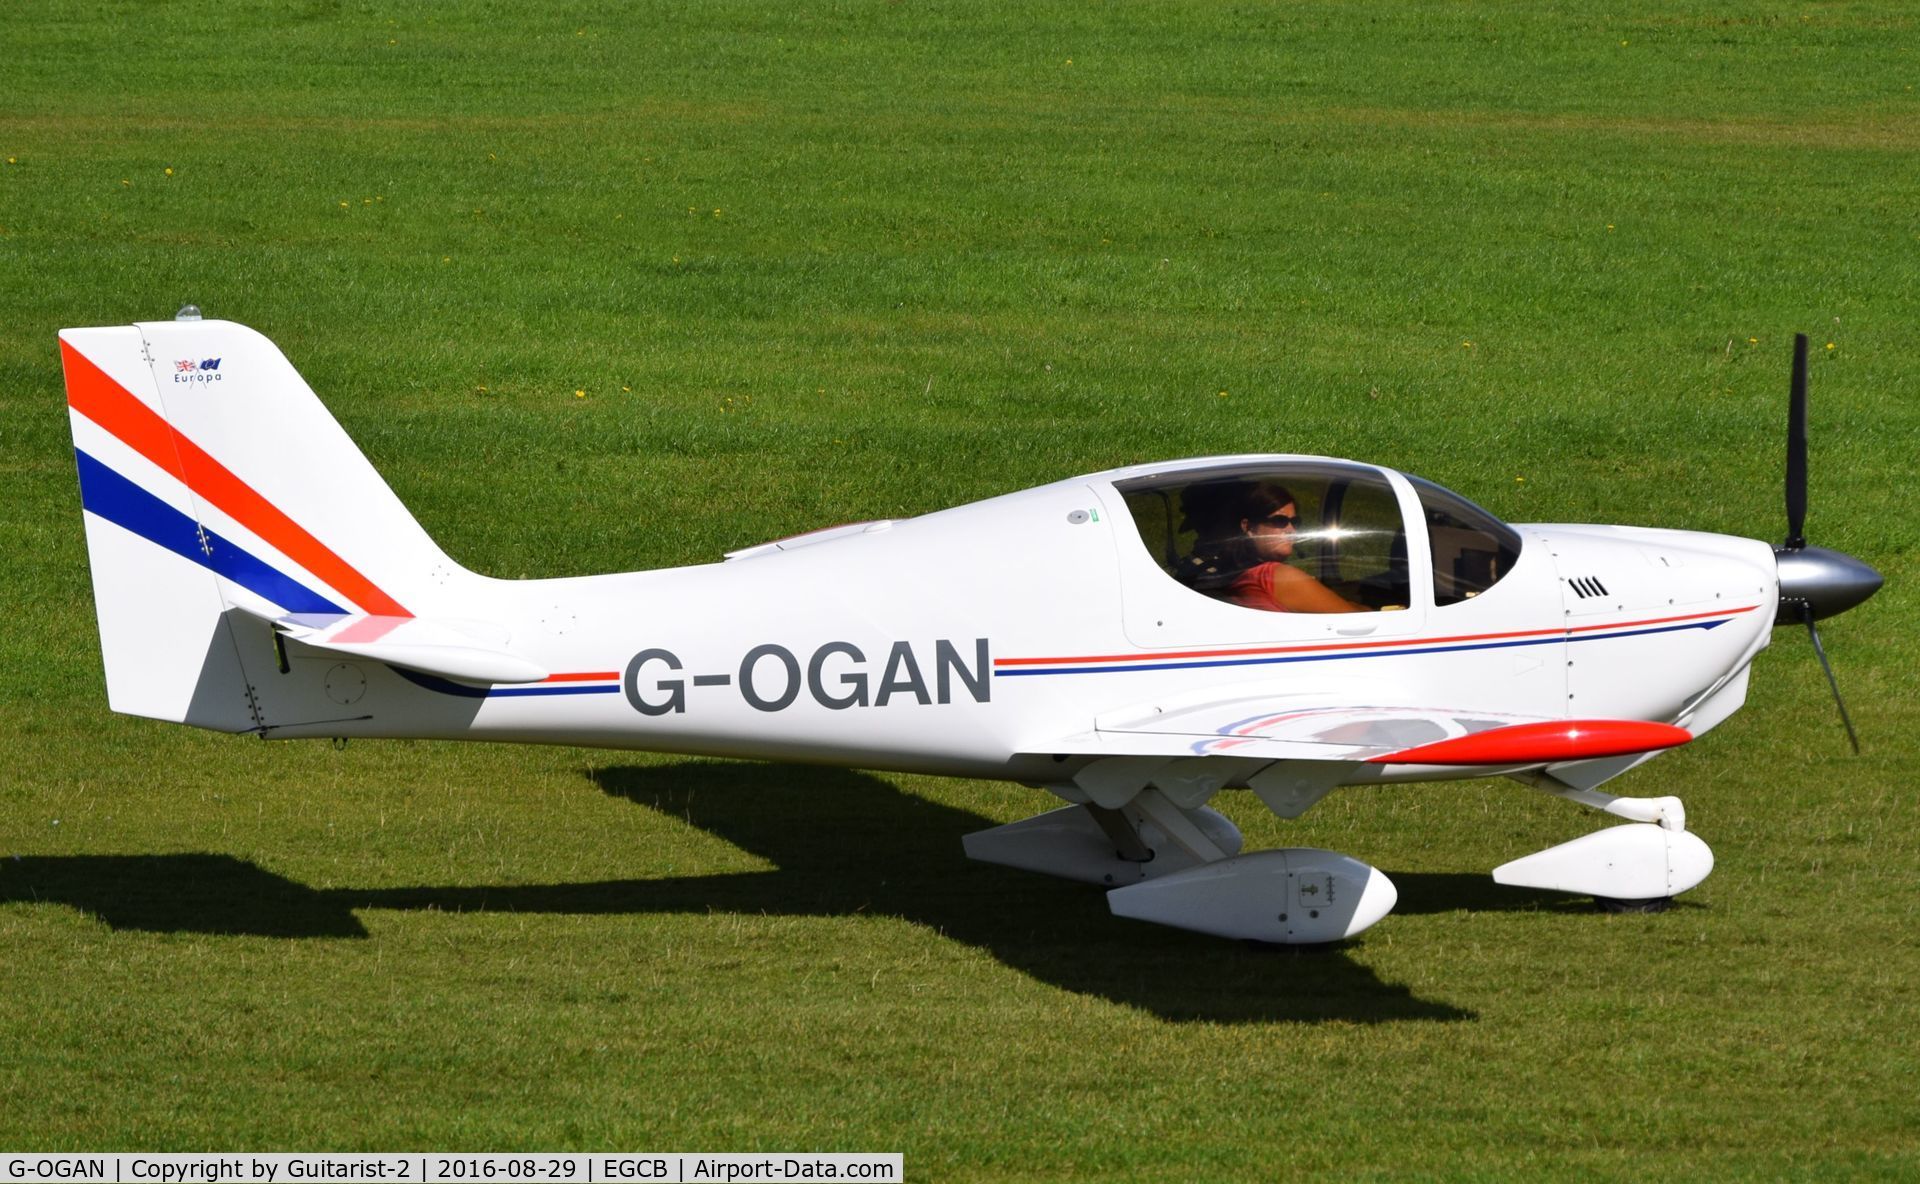 G-OGAN, 1999 Europa Tri Gear C/N PFA 247-12734, At City Airport Manchester